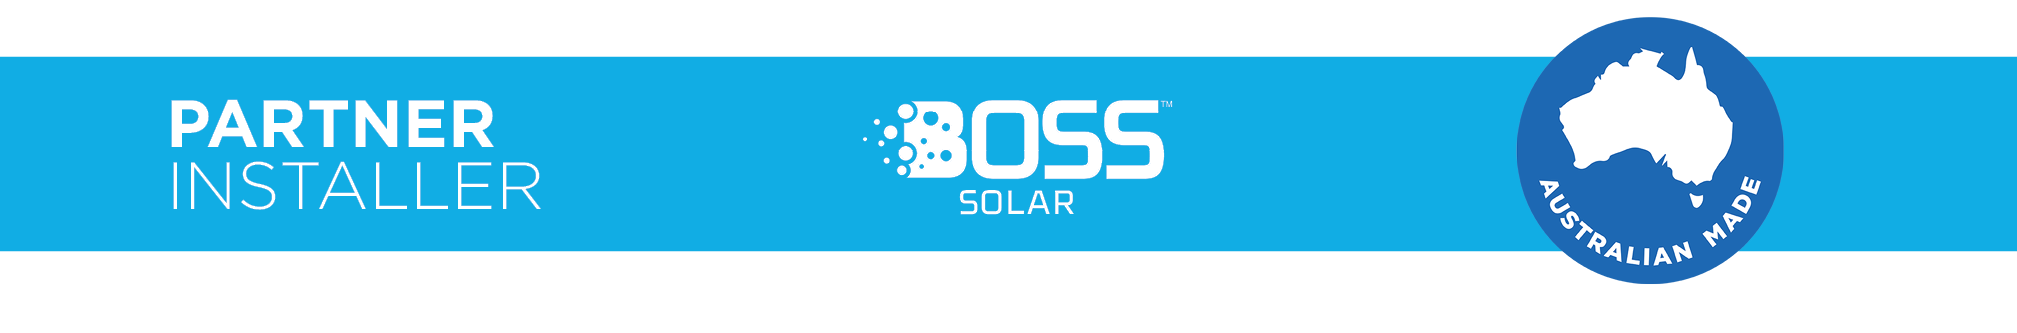 Boss Solar Official Partner Installer